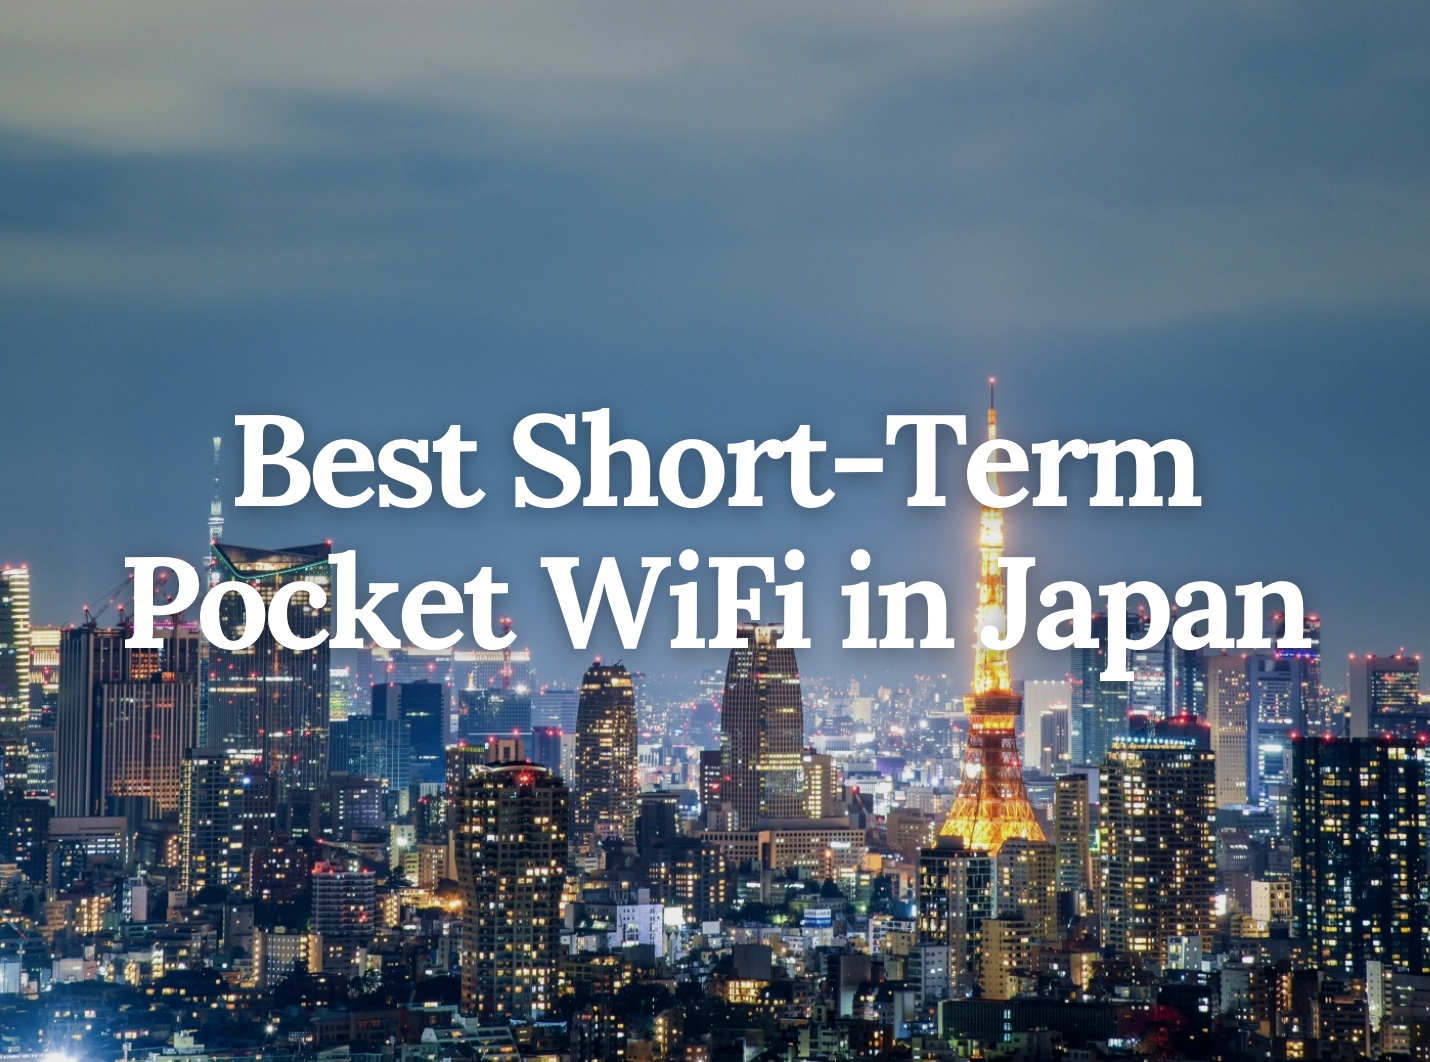 Best Short-Term Pocket WiFi in Japan